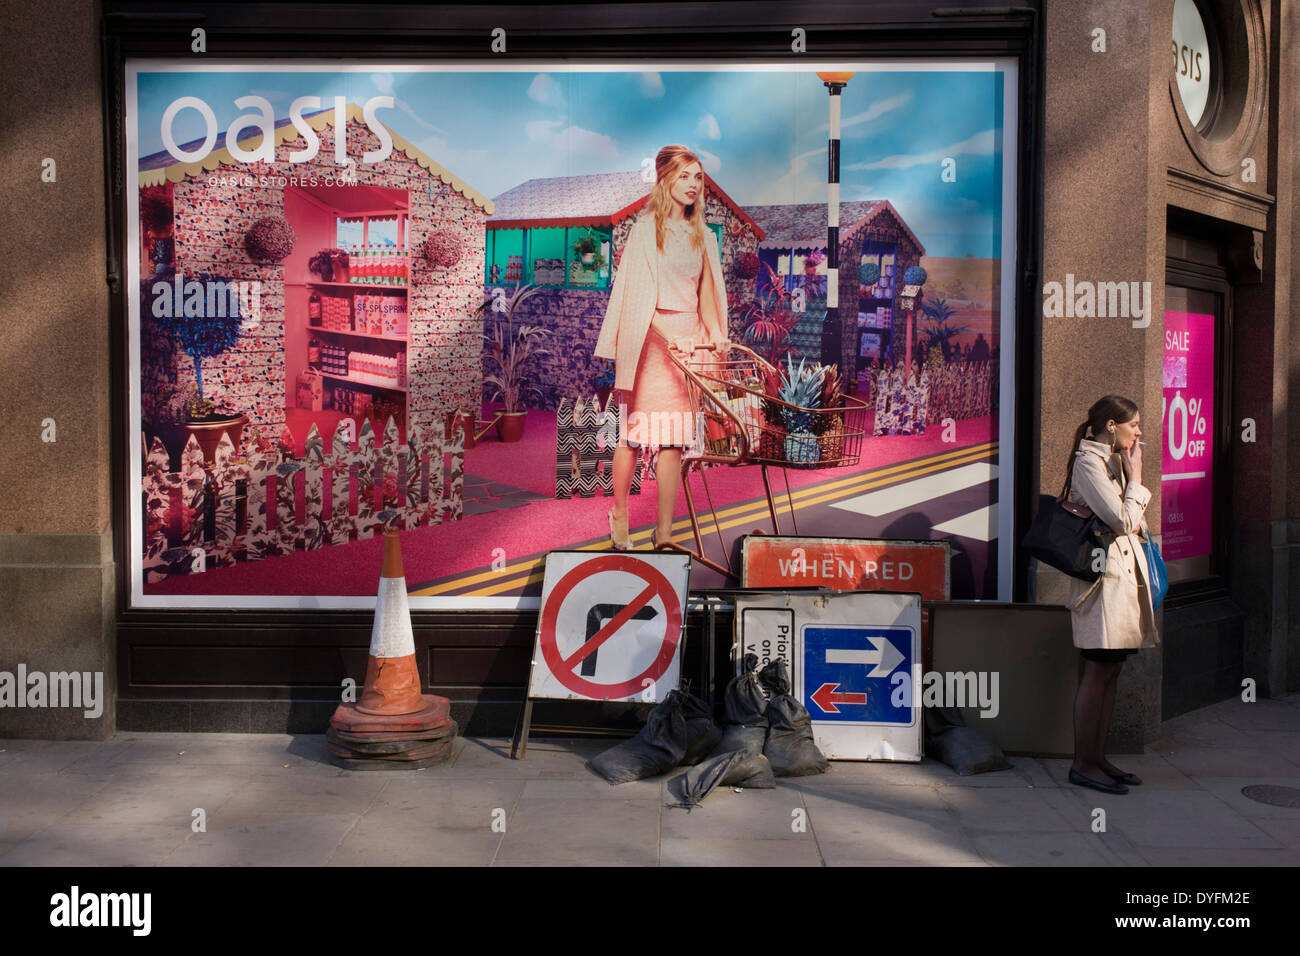 Dame fumeur et travaux sur les signes avant-coureurs d'une Oasis fashion affiche présentant une jeune femme dans une fantaisie utopique à propos de traverser une route. Banque D'Images